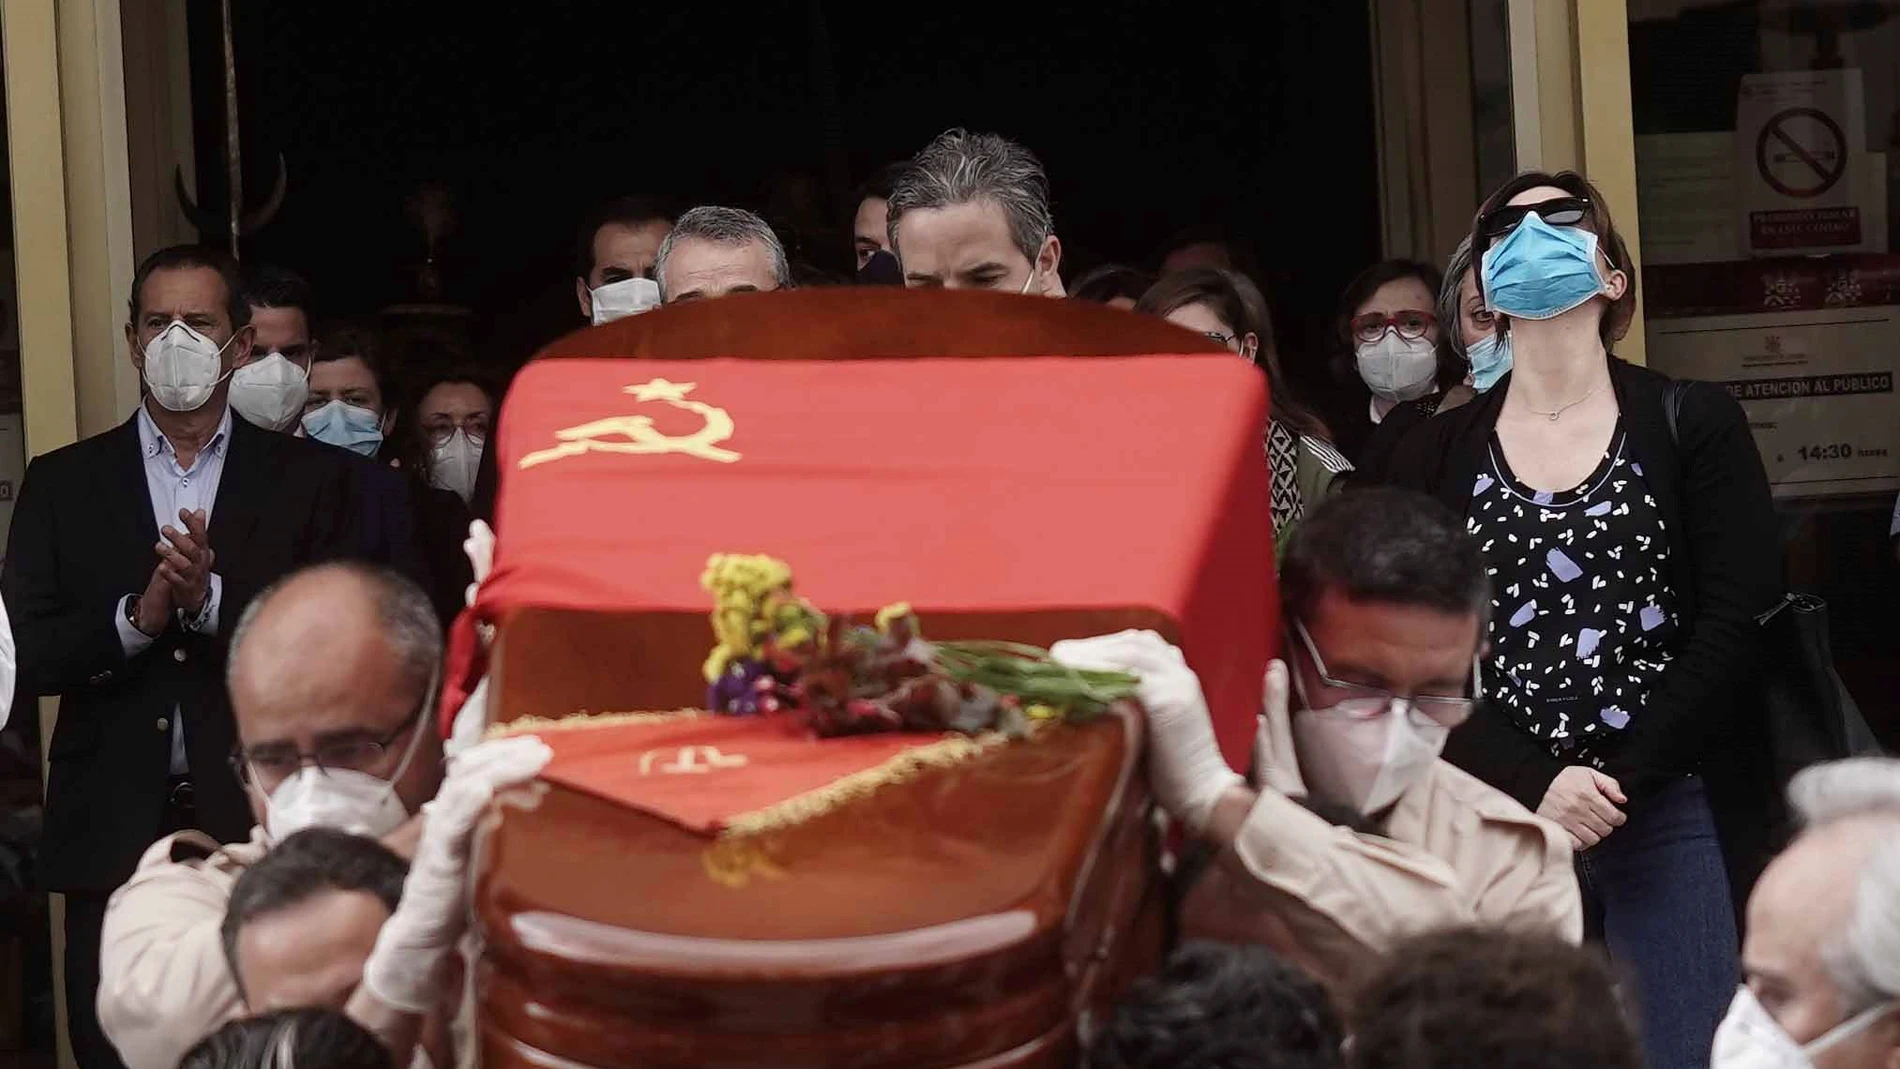 El féretro con los restos mortales de Julio Anguita sale del Ayuntamiento de Córdoba envuelto en la bandera comunista